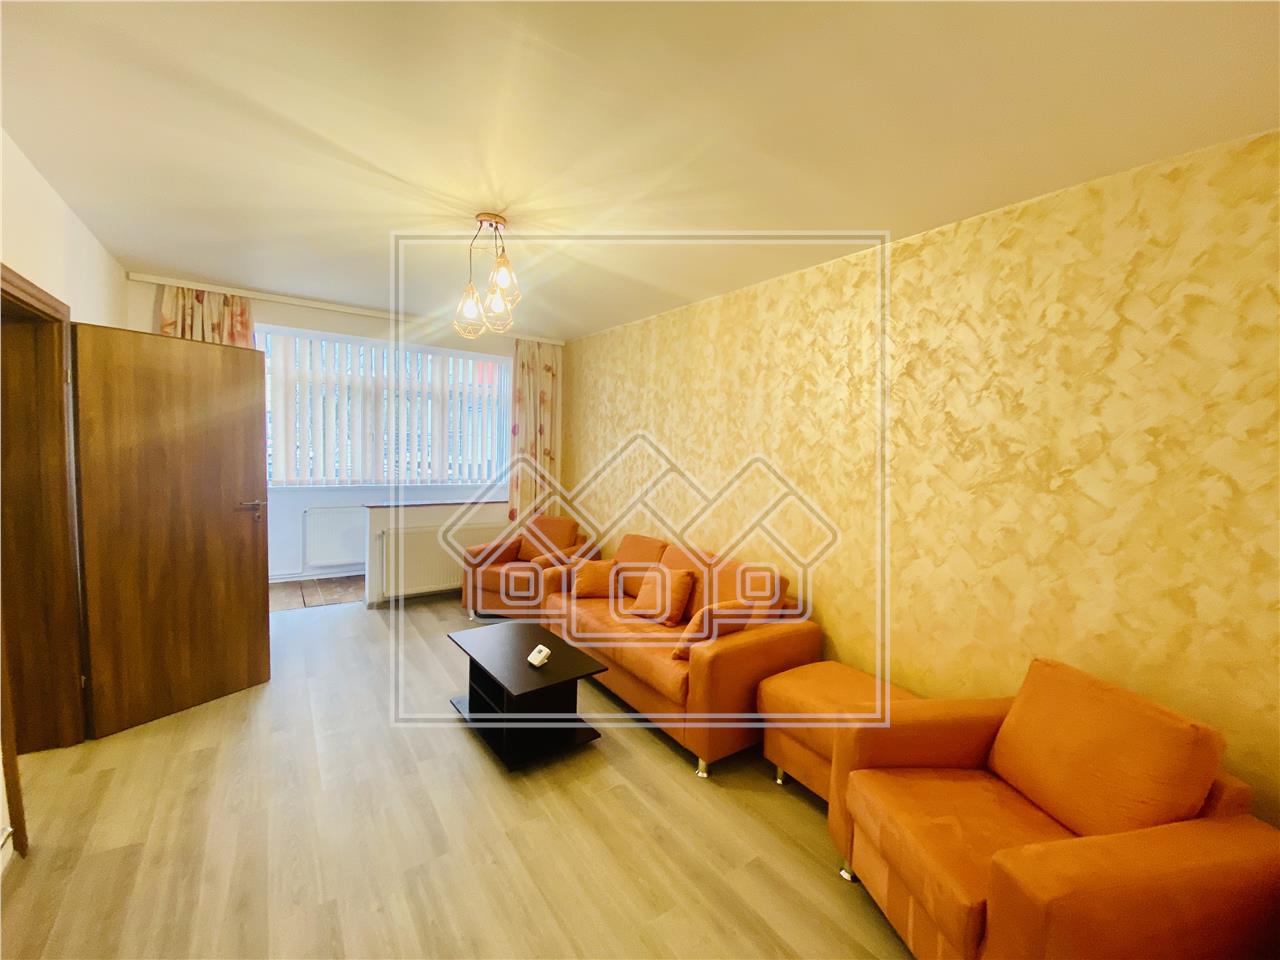 Apartament de vanzare in Sibiu - 2 camere si balcon - zona Rahova